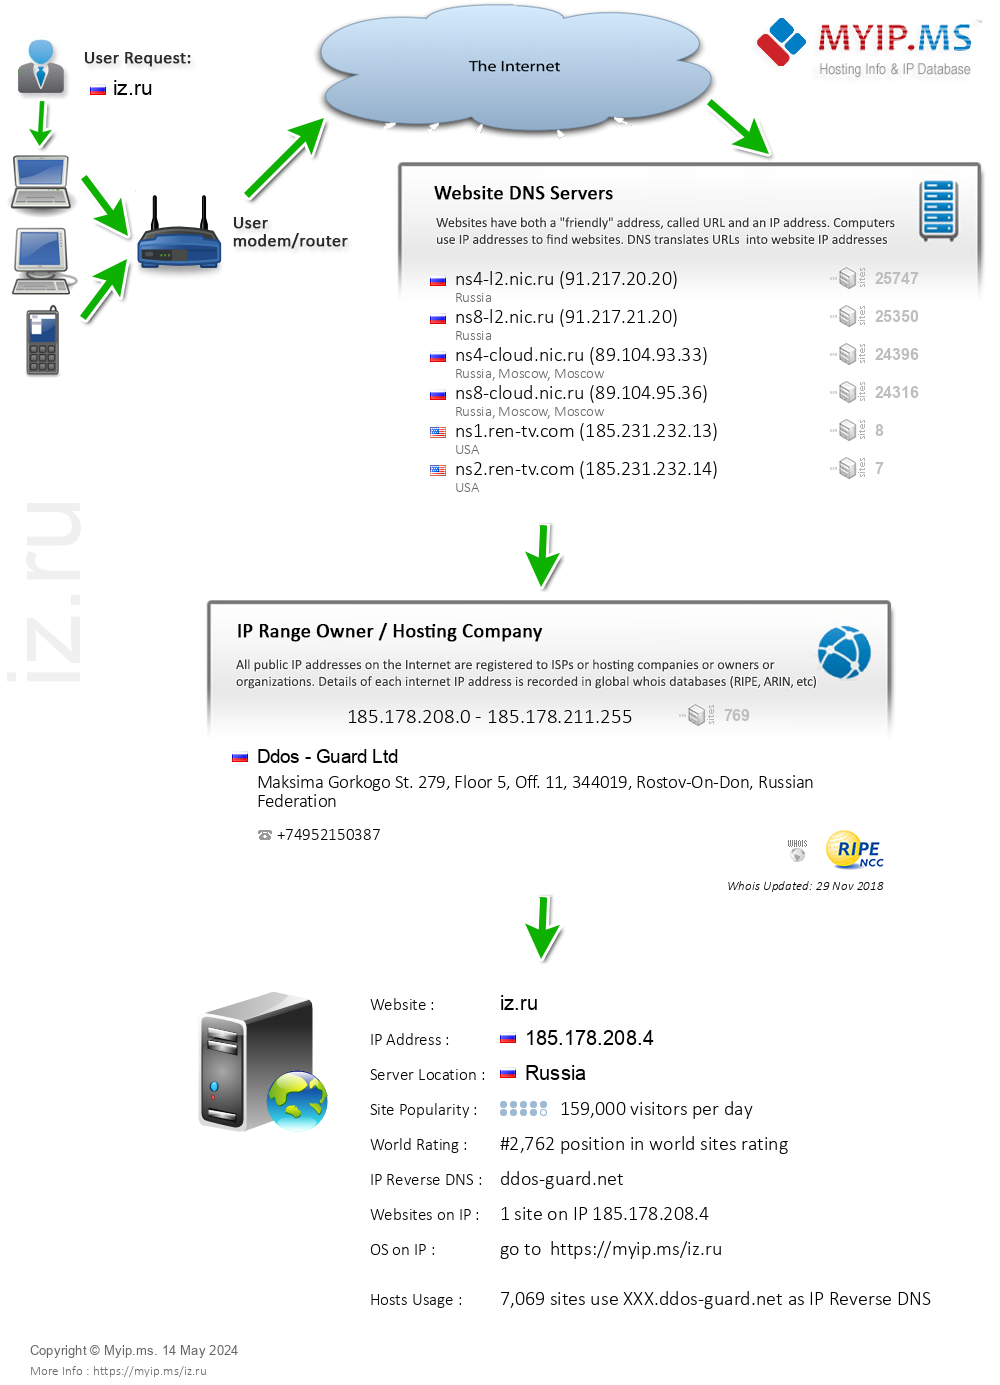 Iz.ru - Website Hosting Visual IP Diagram